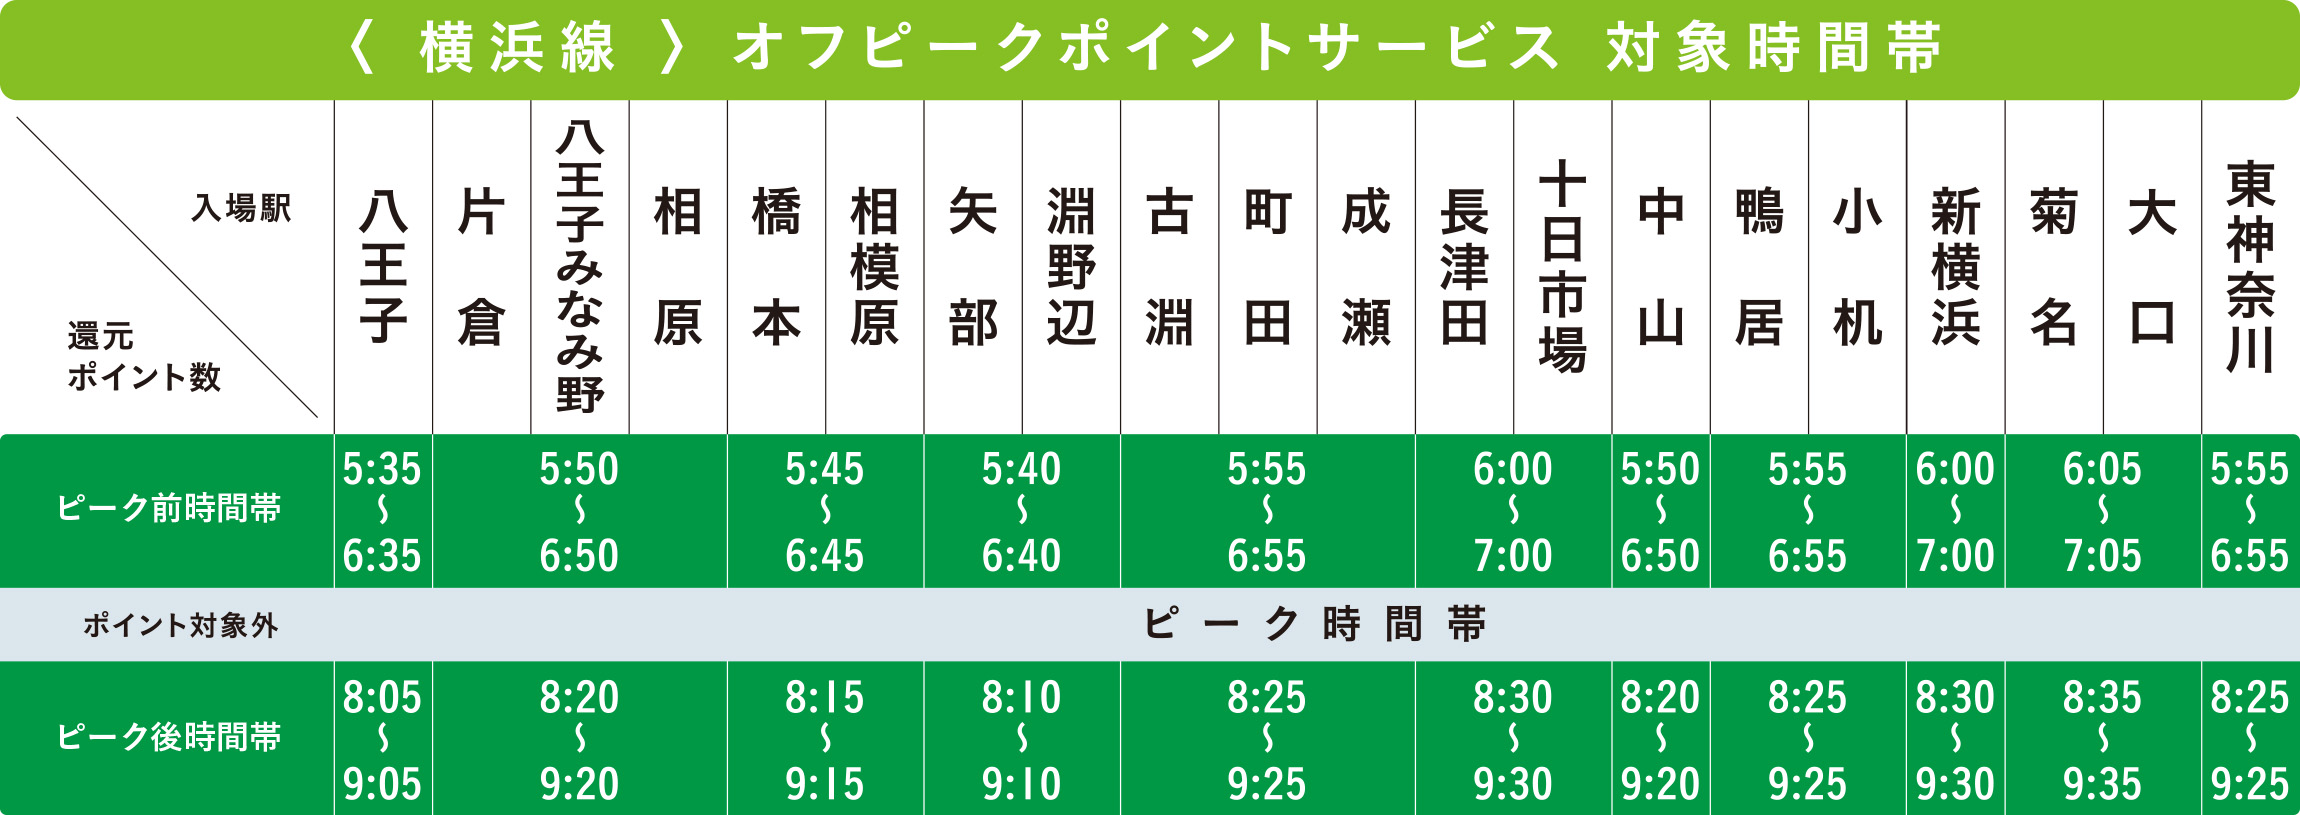 横浜線オフピークポイントサービス対象時間帯